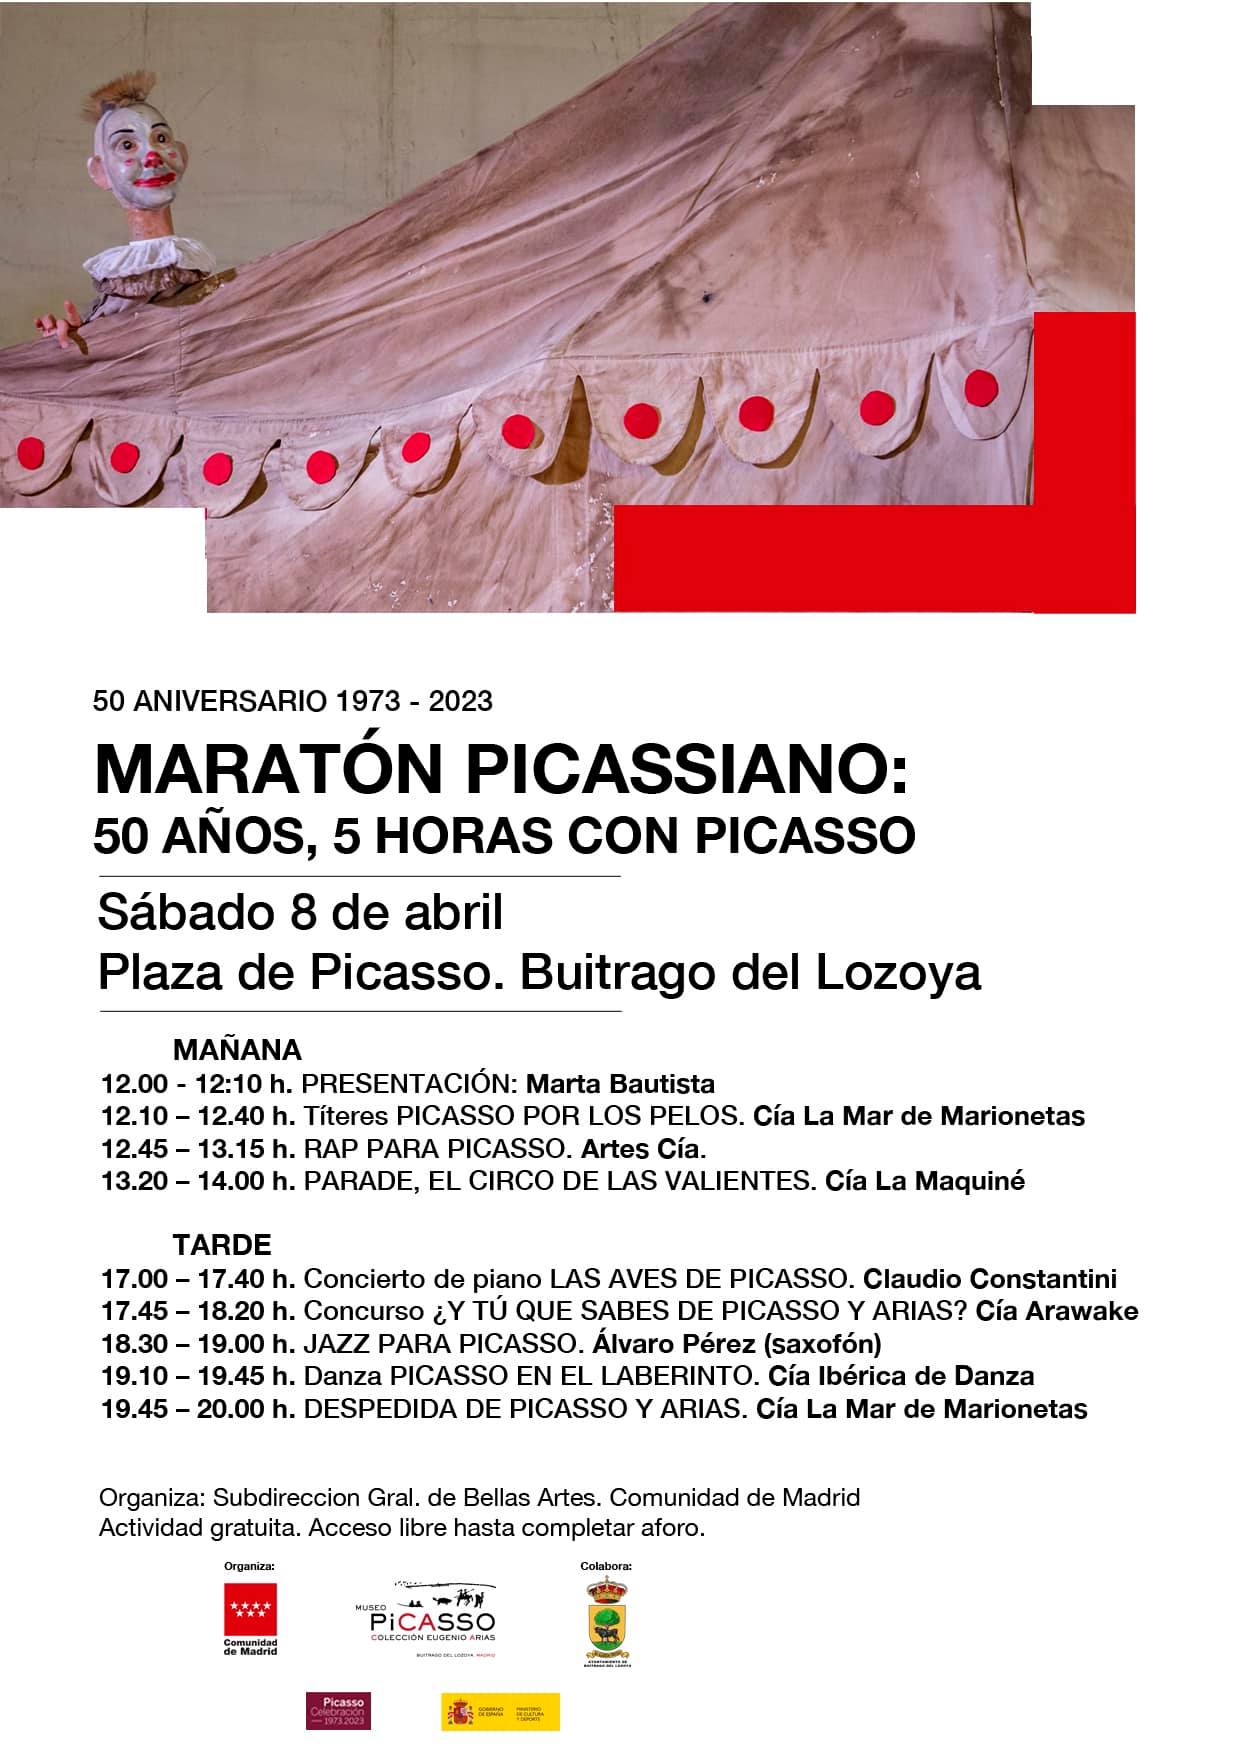 Maraton Picassiano Buitrago